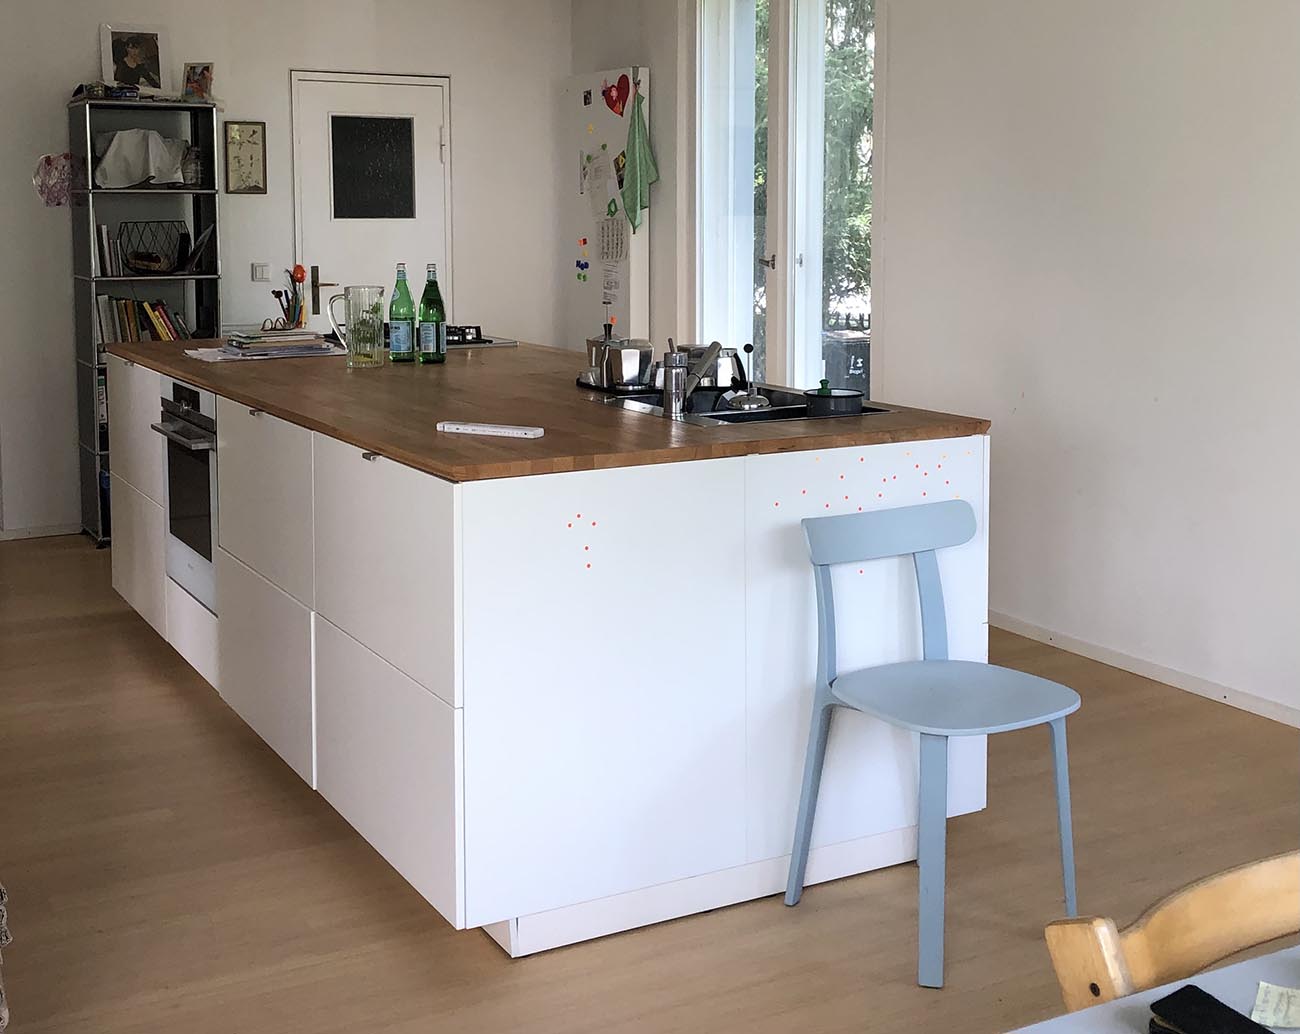 Vorher: Eine veraltete IKEA Küche mit langweiligen weißen Schränken und einfacher Gestaltung.